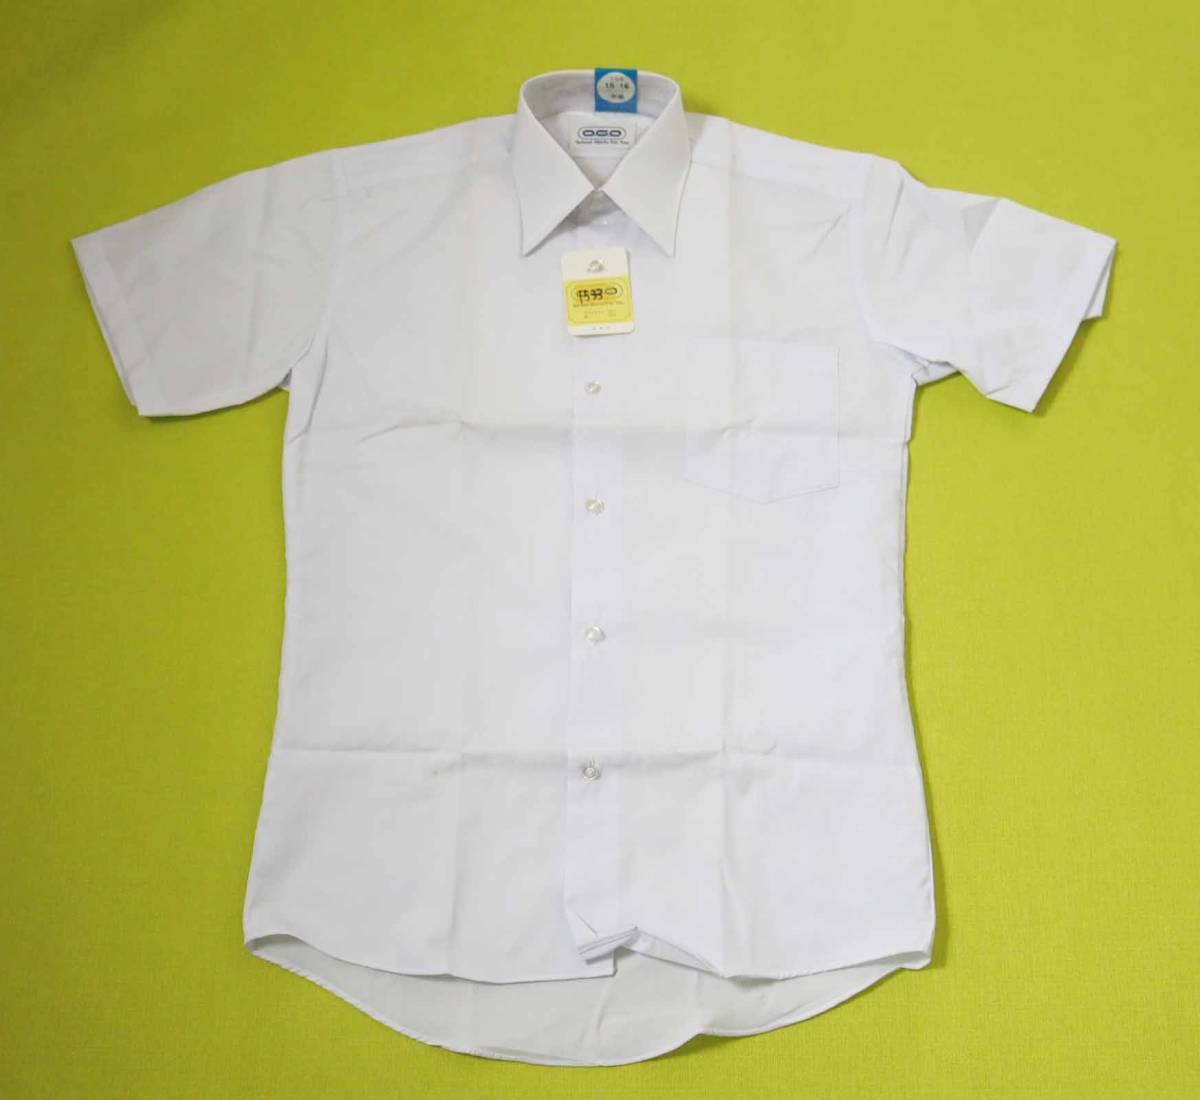 1534-15 スクールシャツ 半袖Yシャツ 学生シャツ 白 160㎝ OGO わけあり 新古品 長期保管品 の画像1